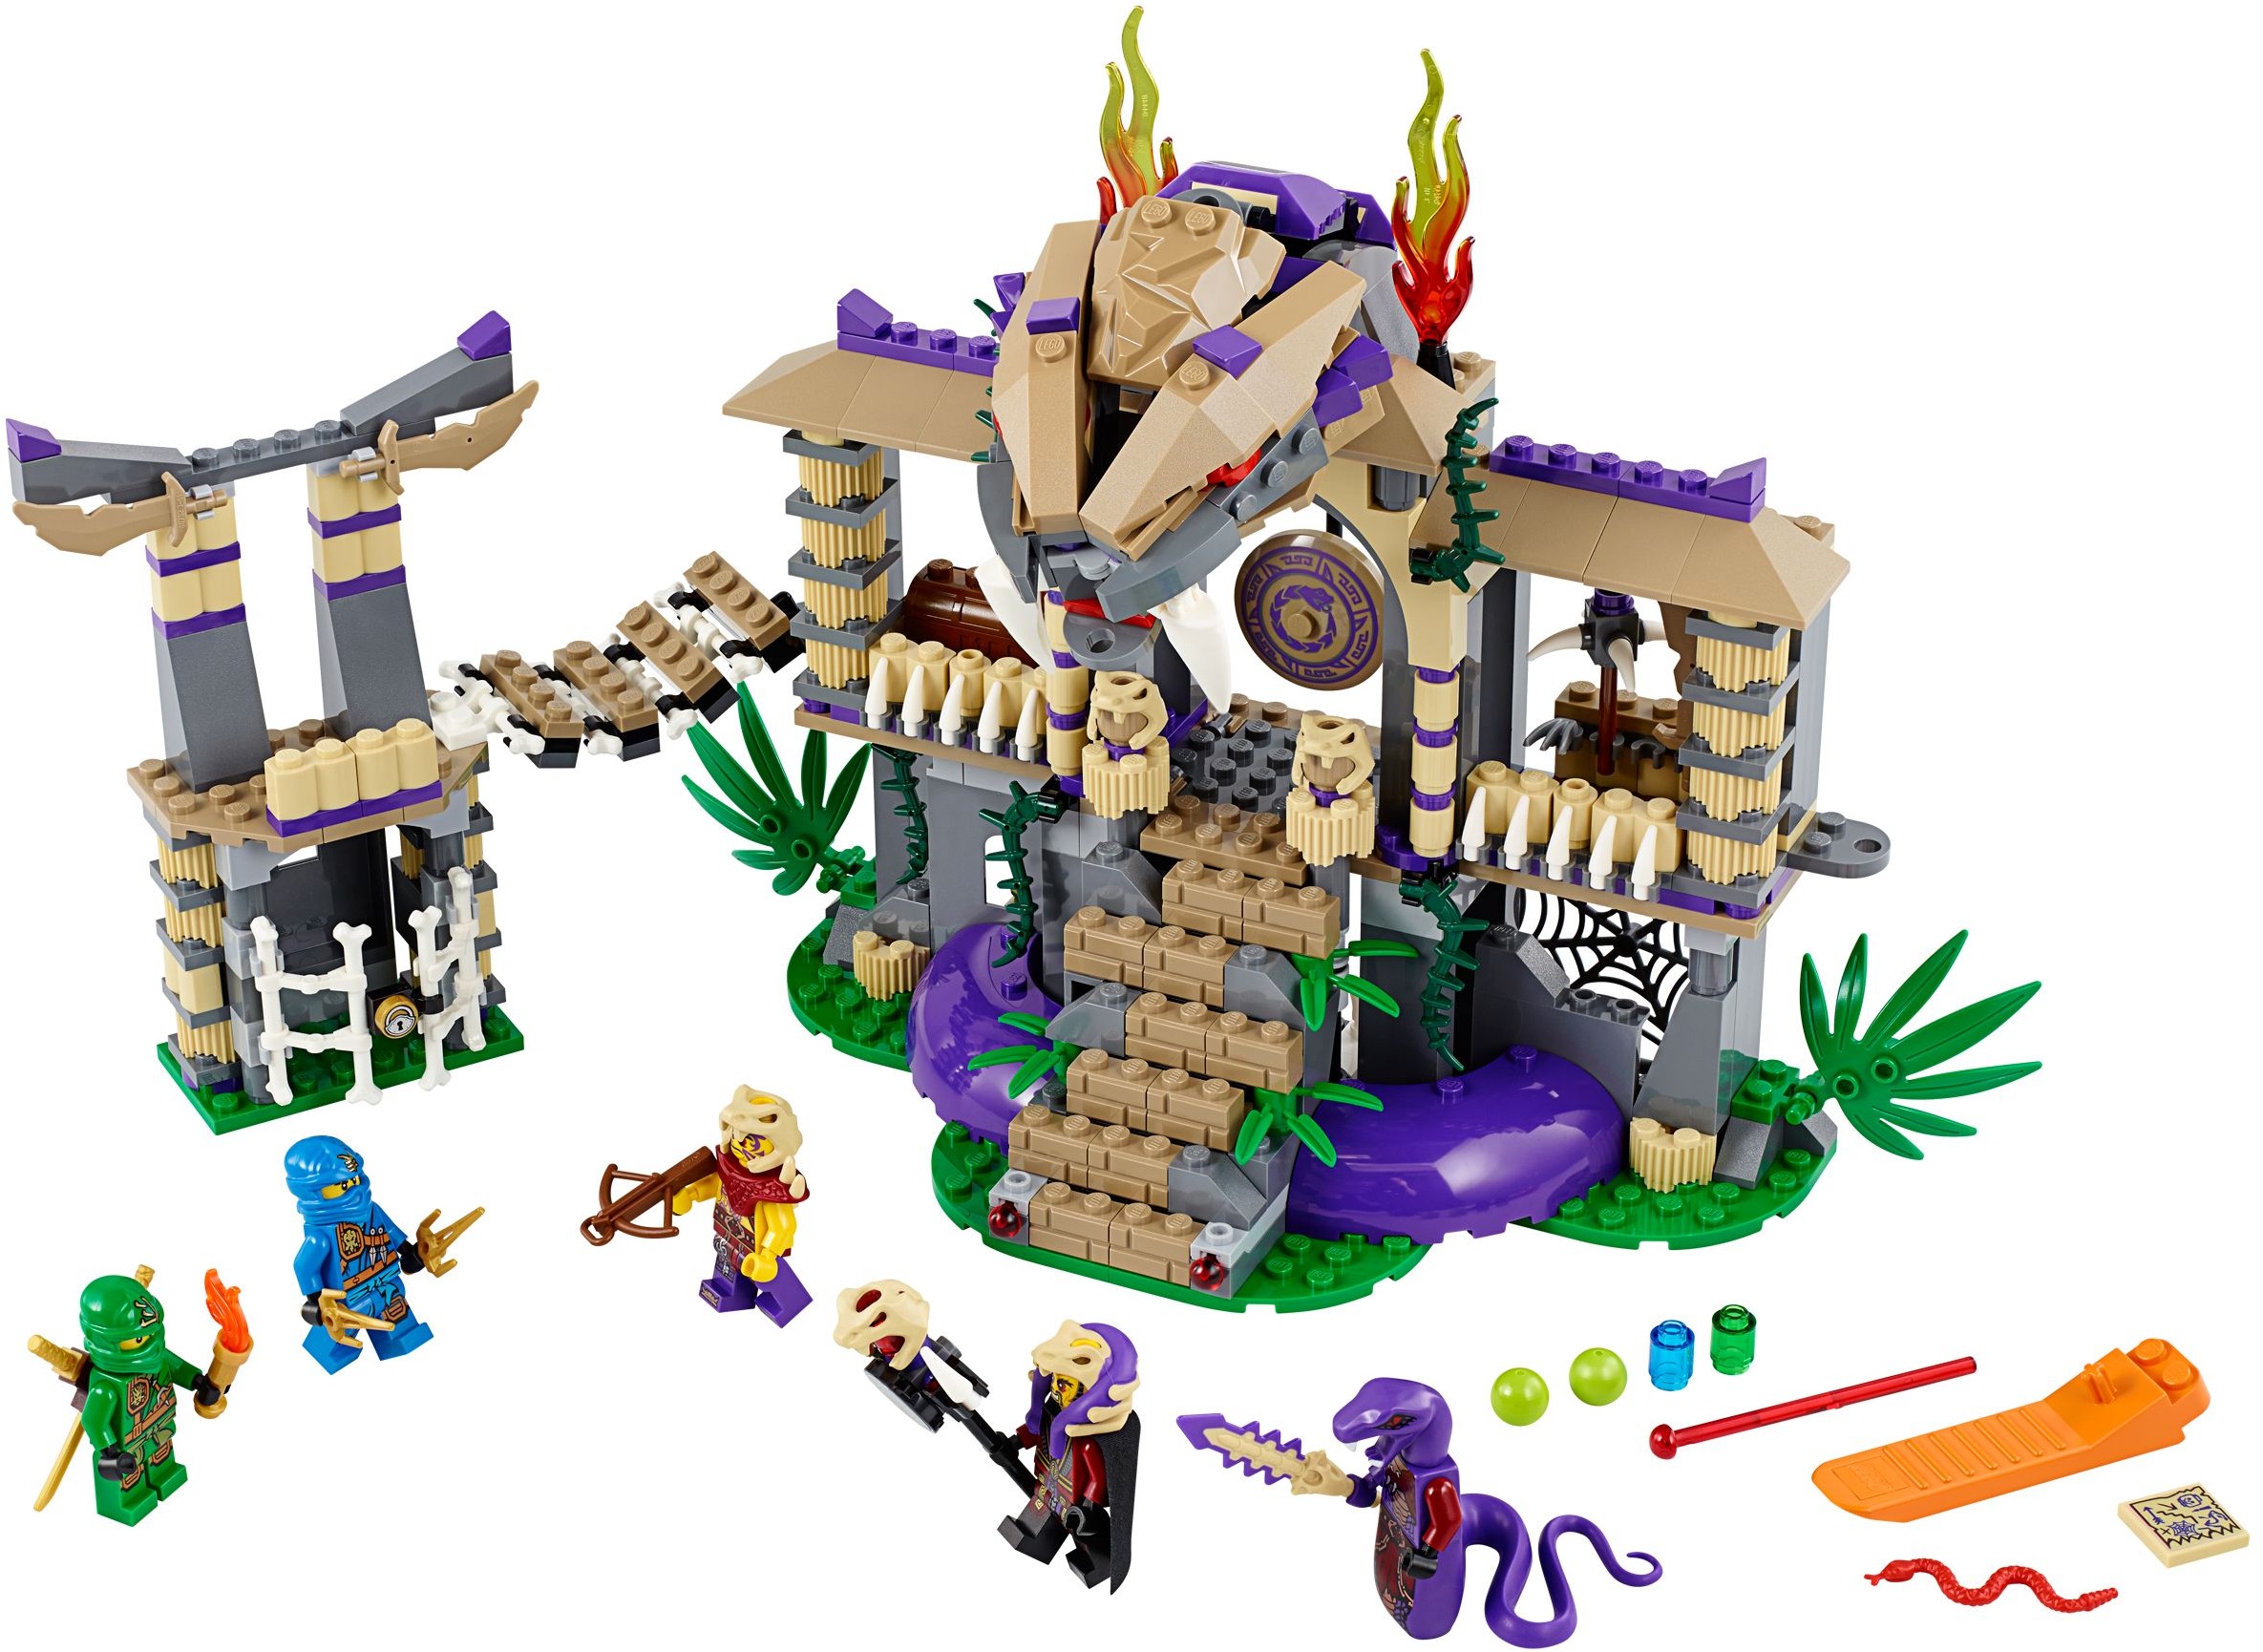 Lego Ninjago Intrarea In Templul Serpilor 7-14 Ani (70749)